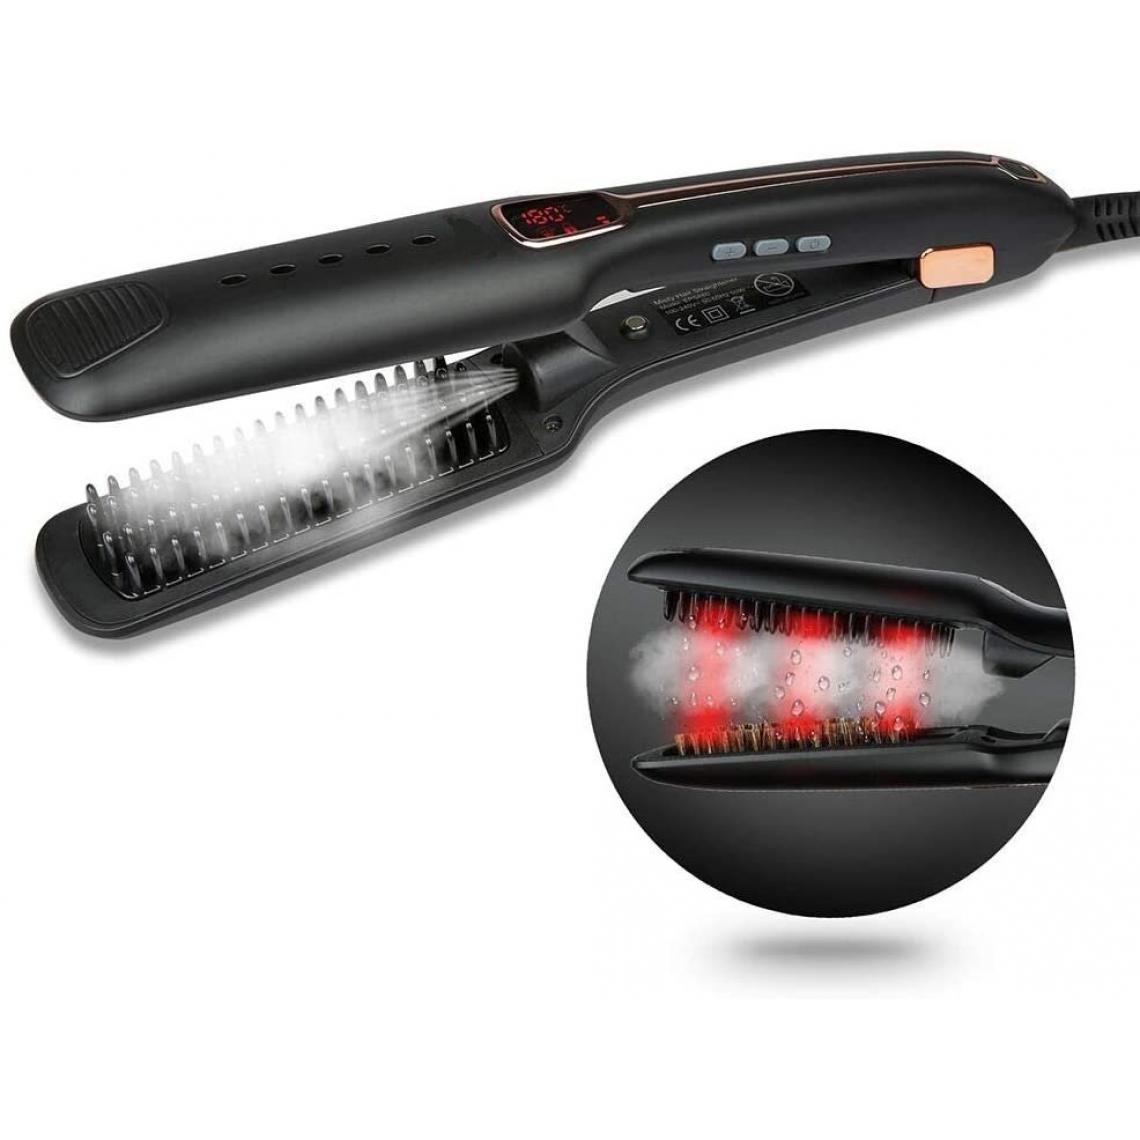 Chrono - Brosse Lissante Chauffante,Fer à Lisser,Lisseur Vapeur Cheveux infrarouge avec écran LCD,crinière naturelle, température réglable - Lisseur